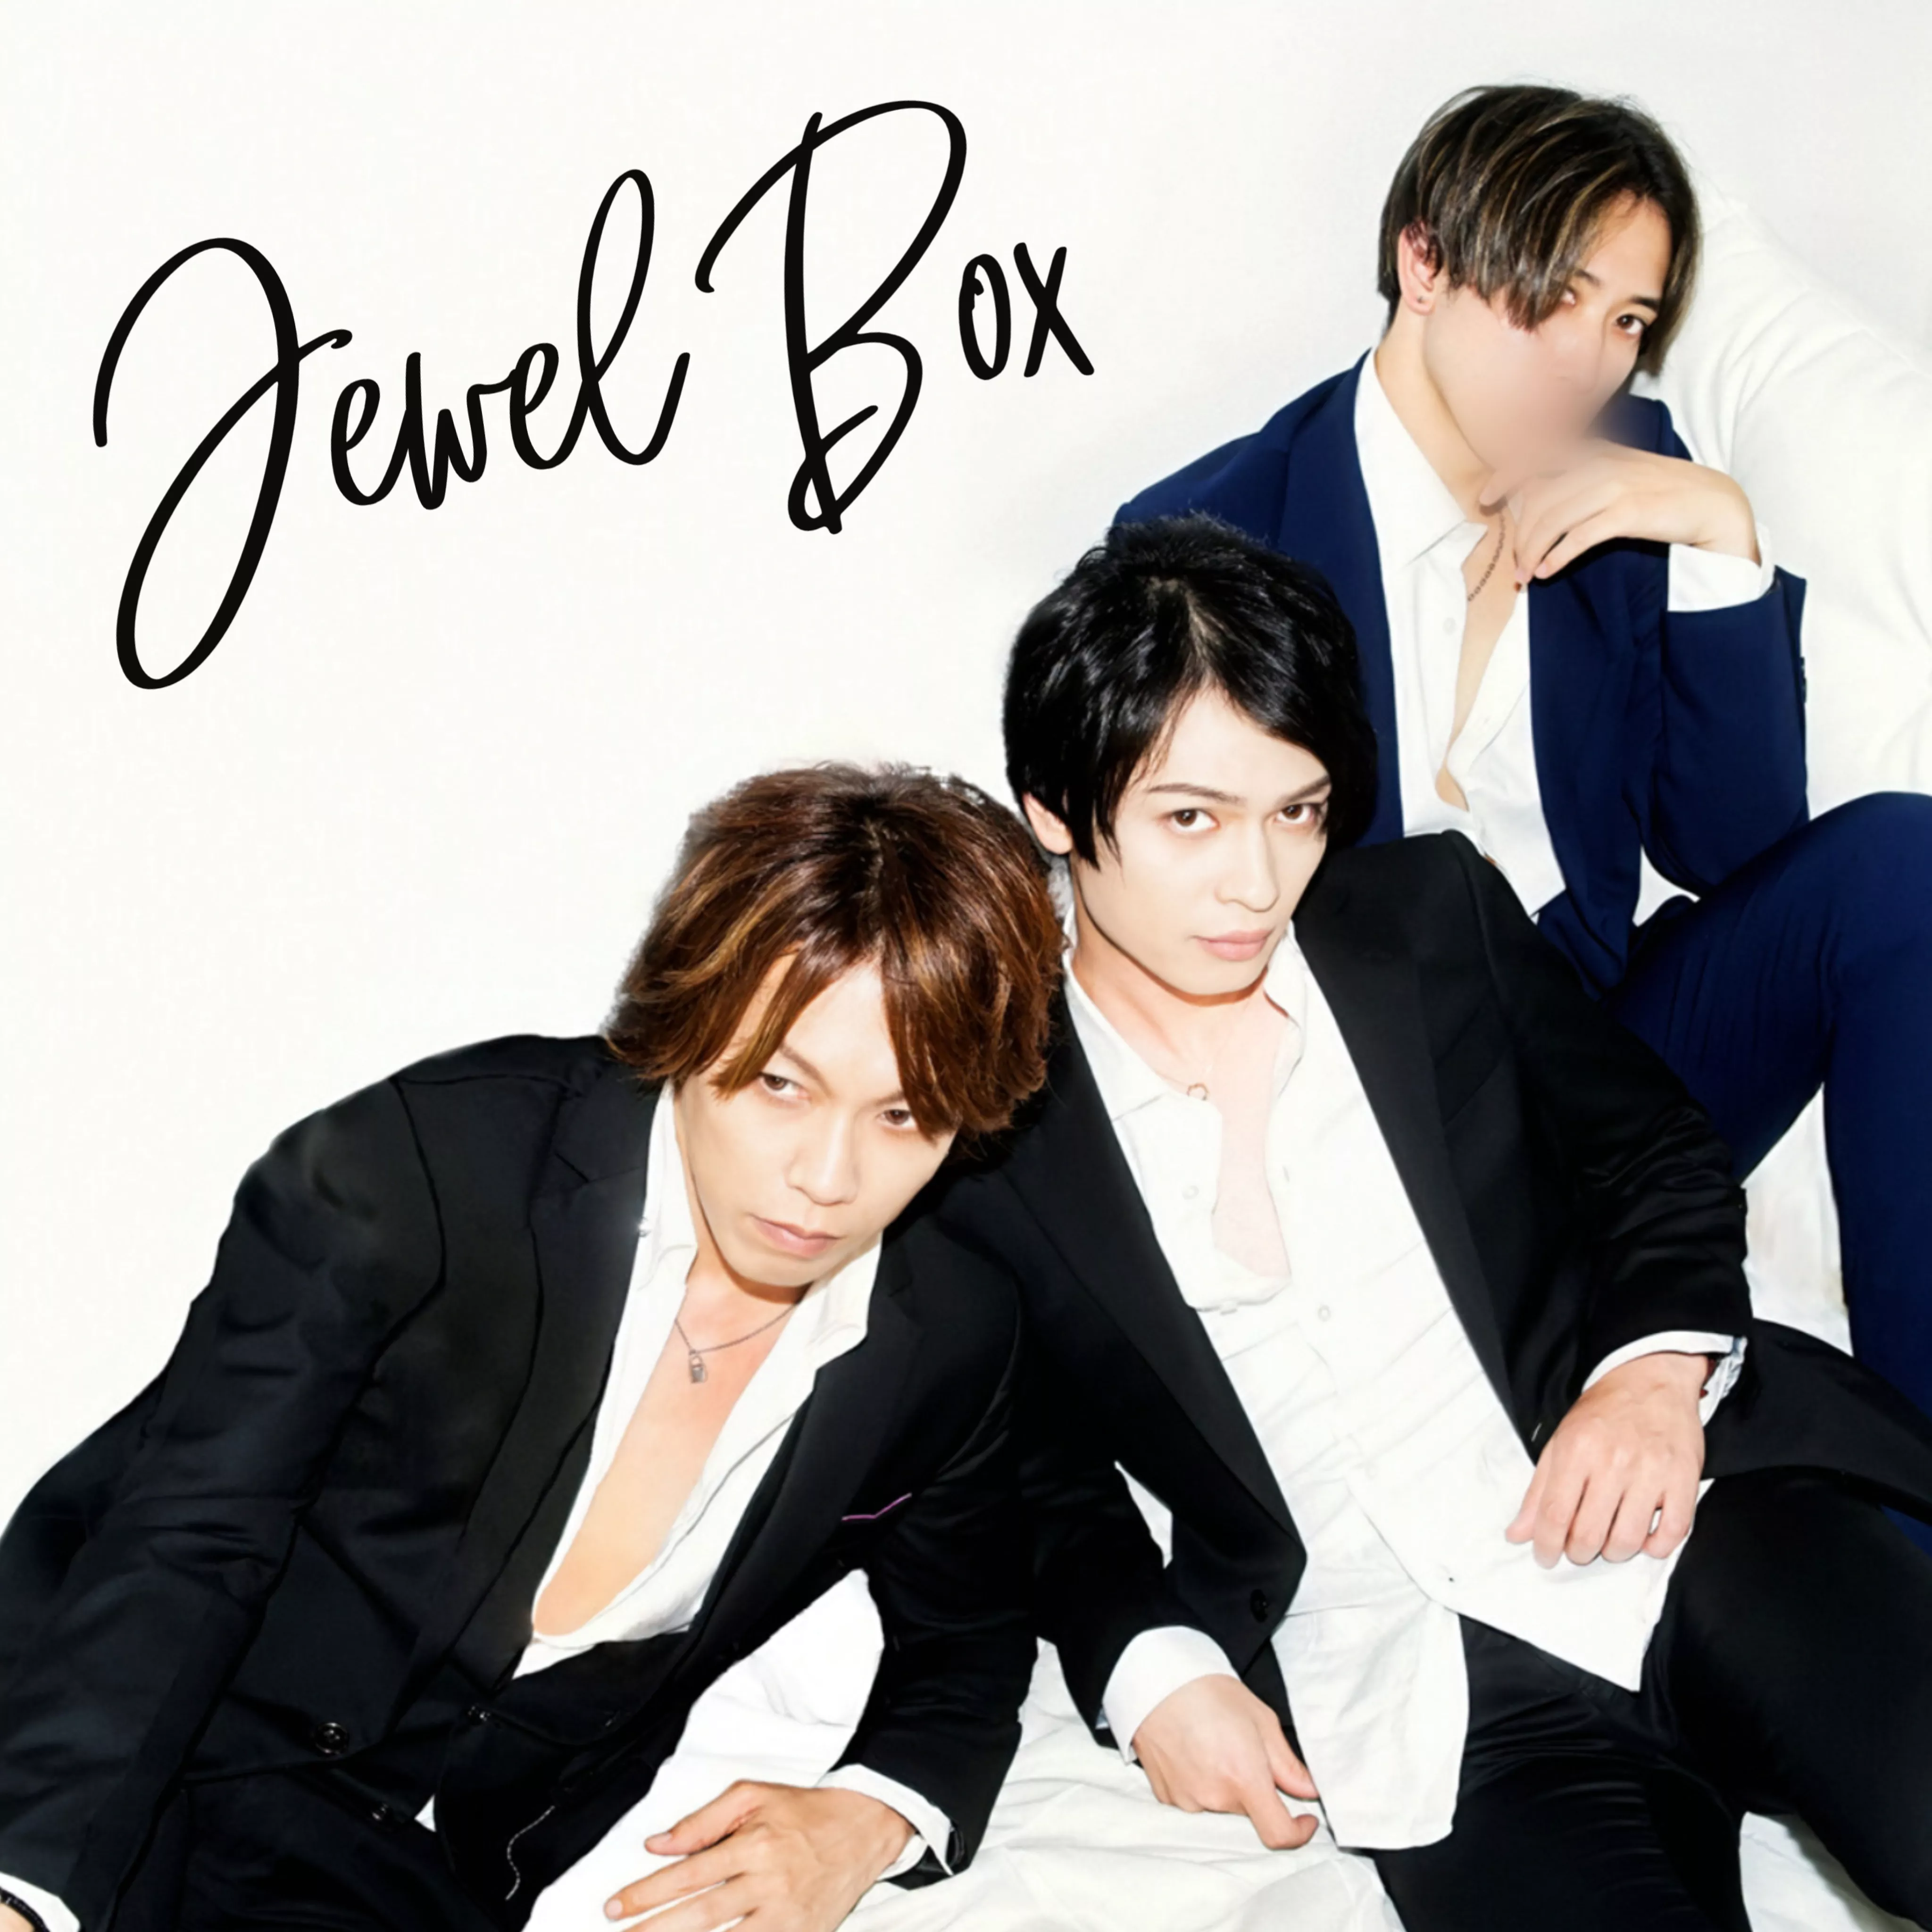 【Jewel Box】Kaikanクチコミ割引